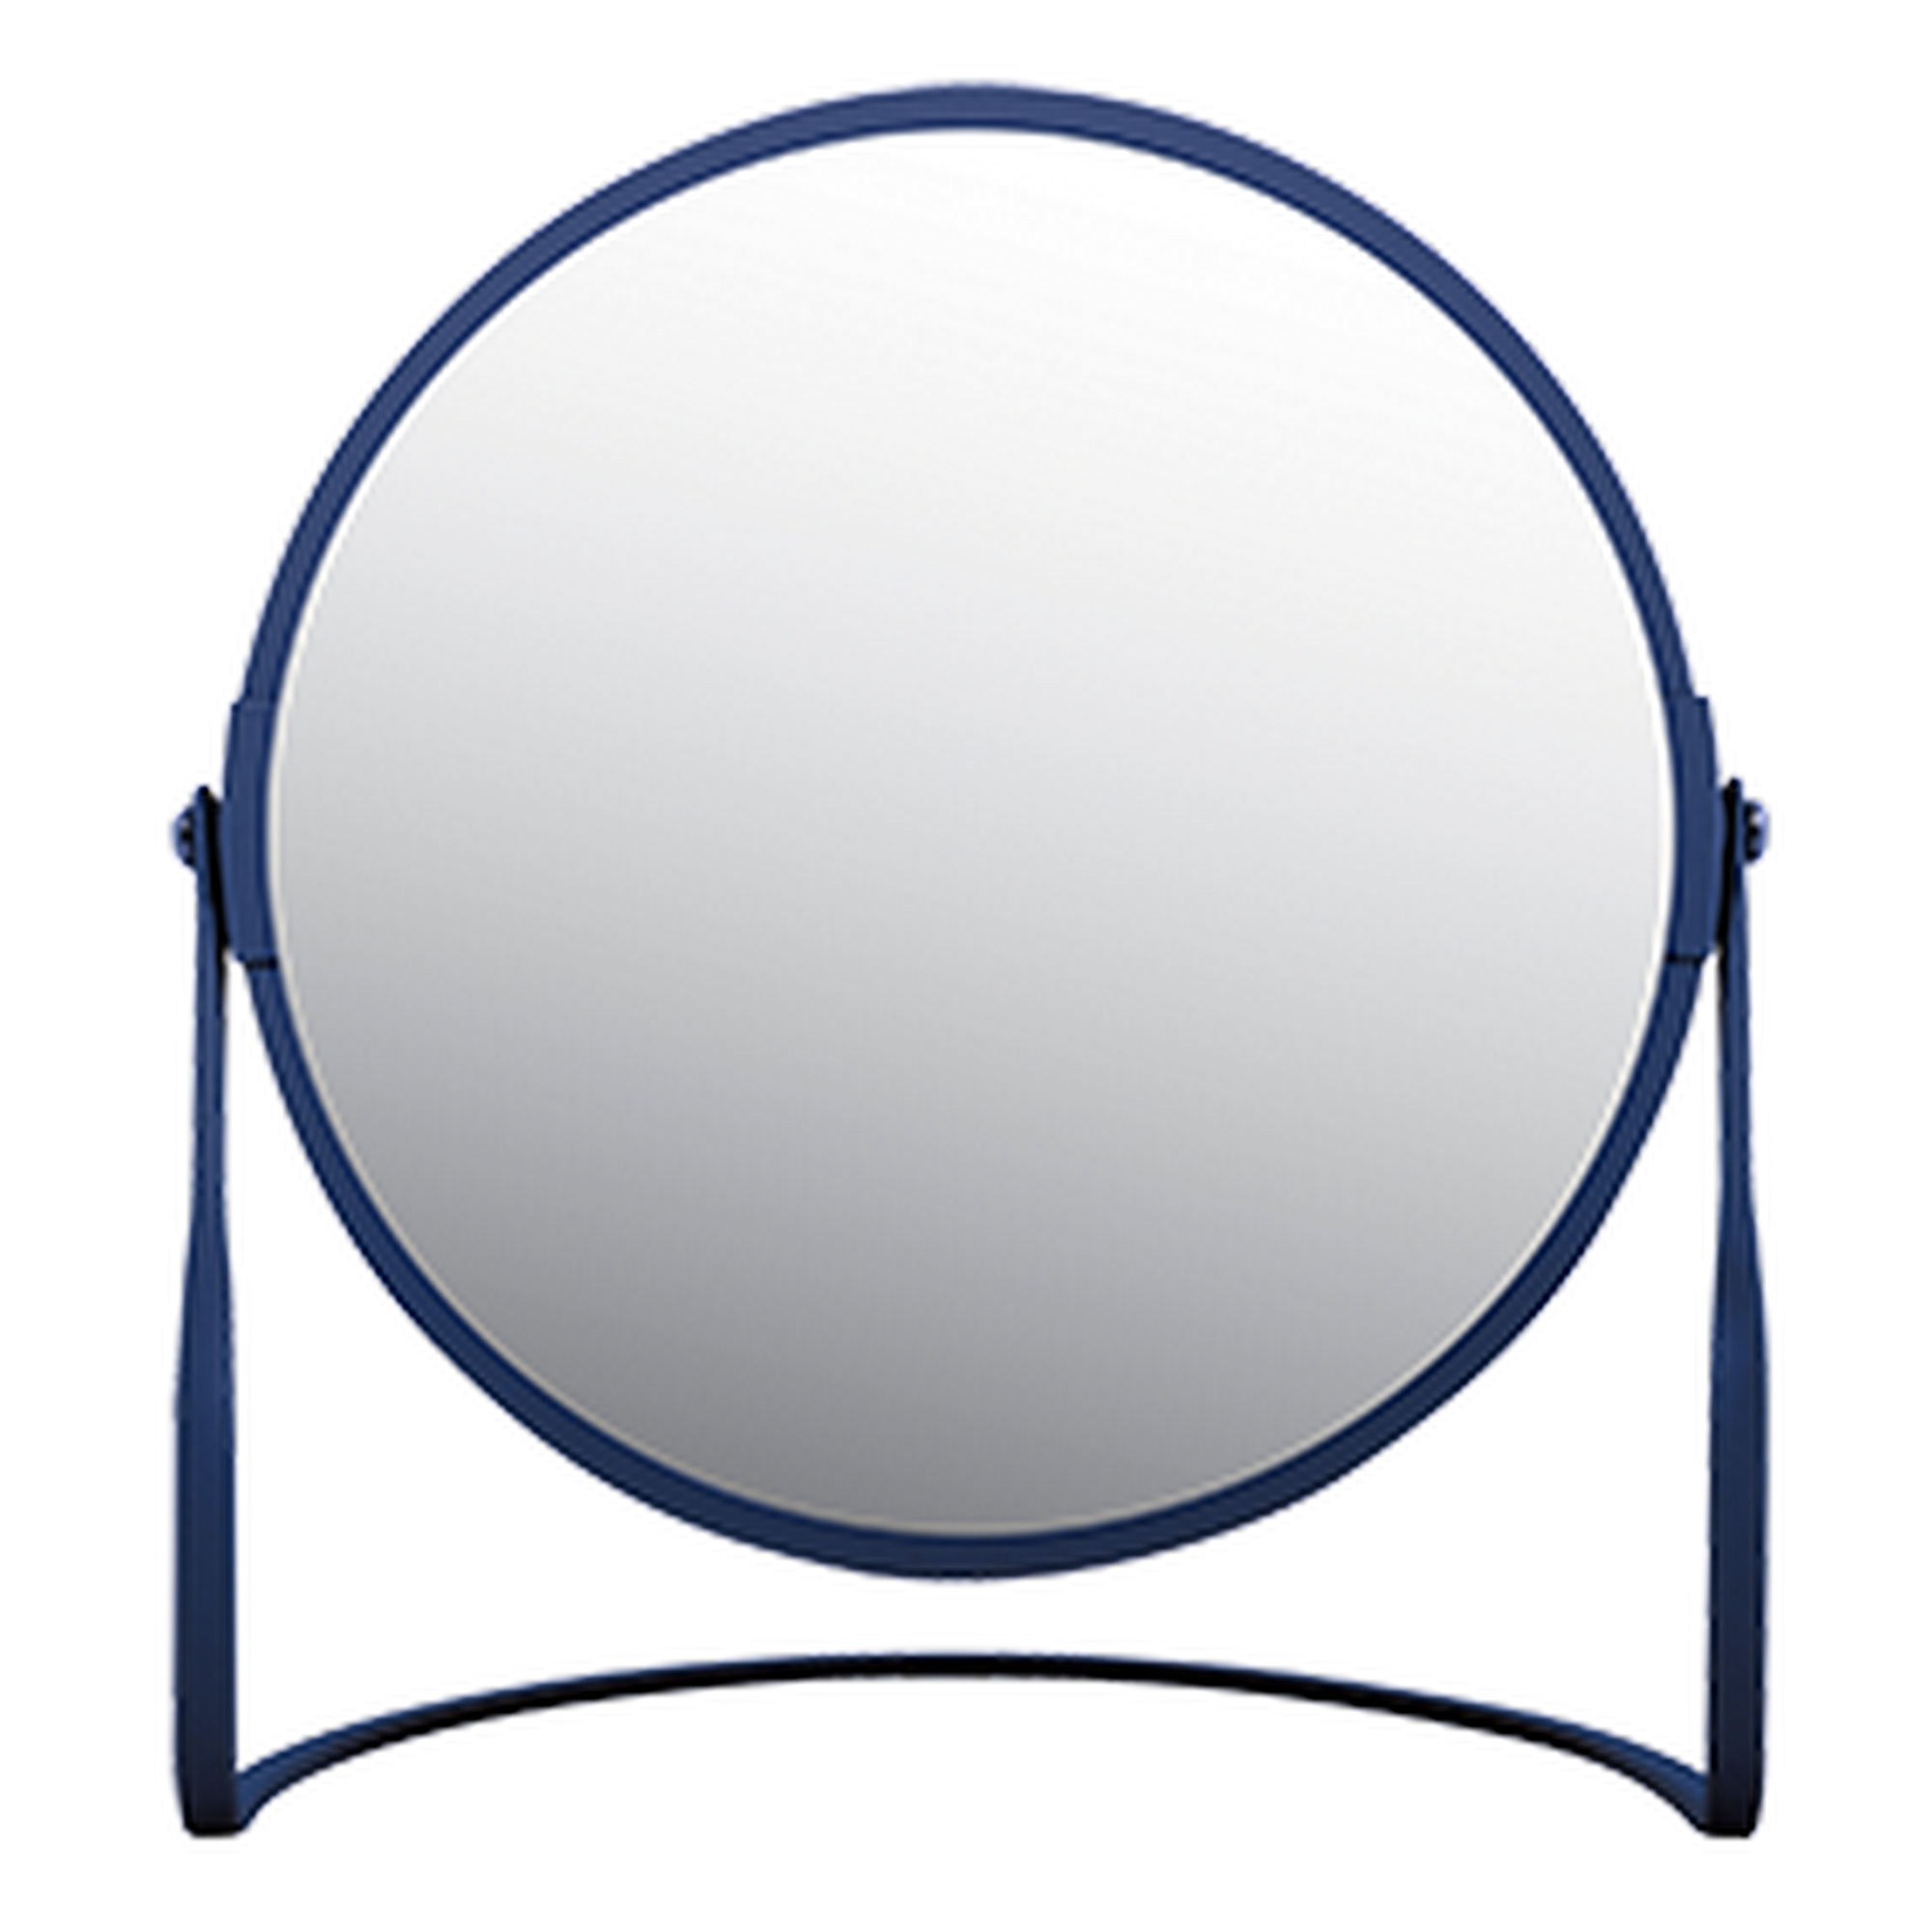 Standspiegel 'Akira' dunkelblau Ø 18,4 cm, mit 5-fach Vergrößerung + product picture